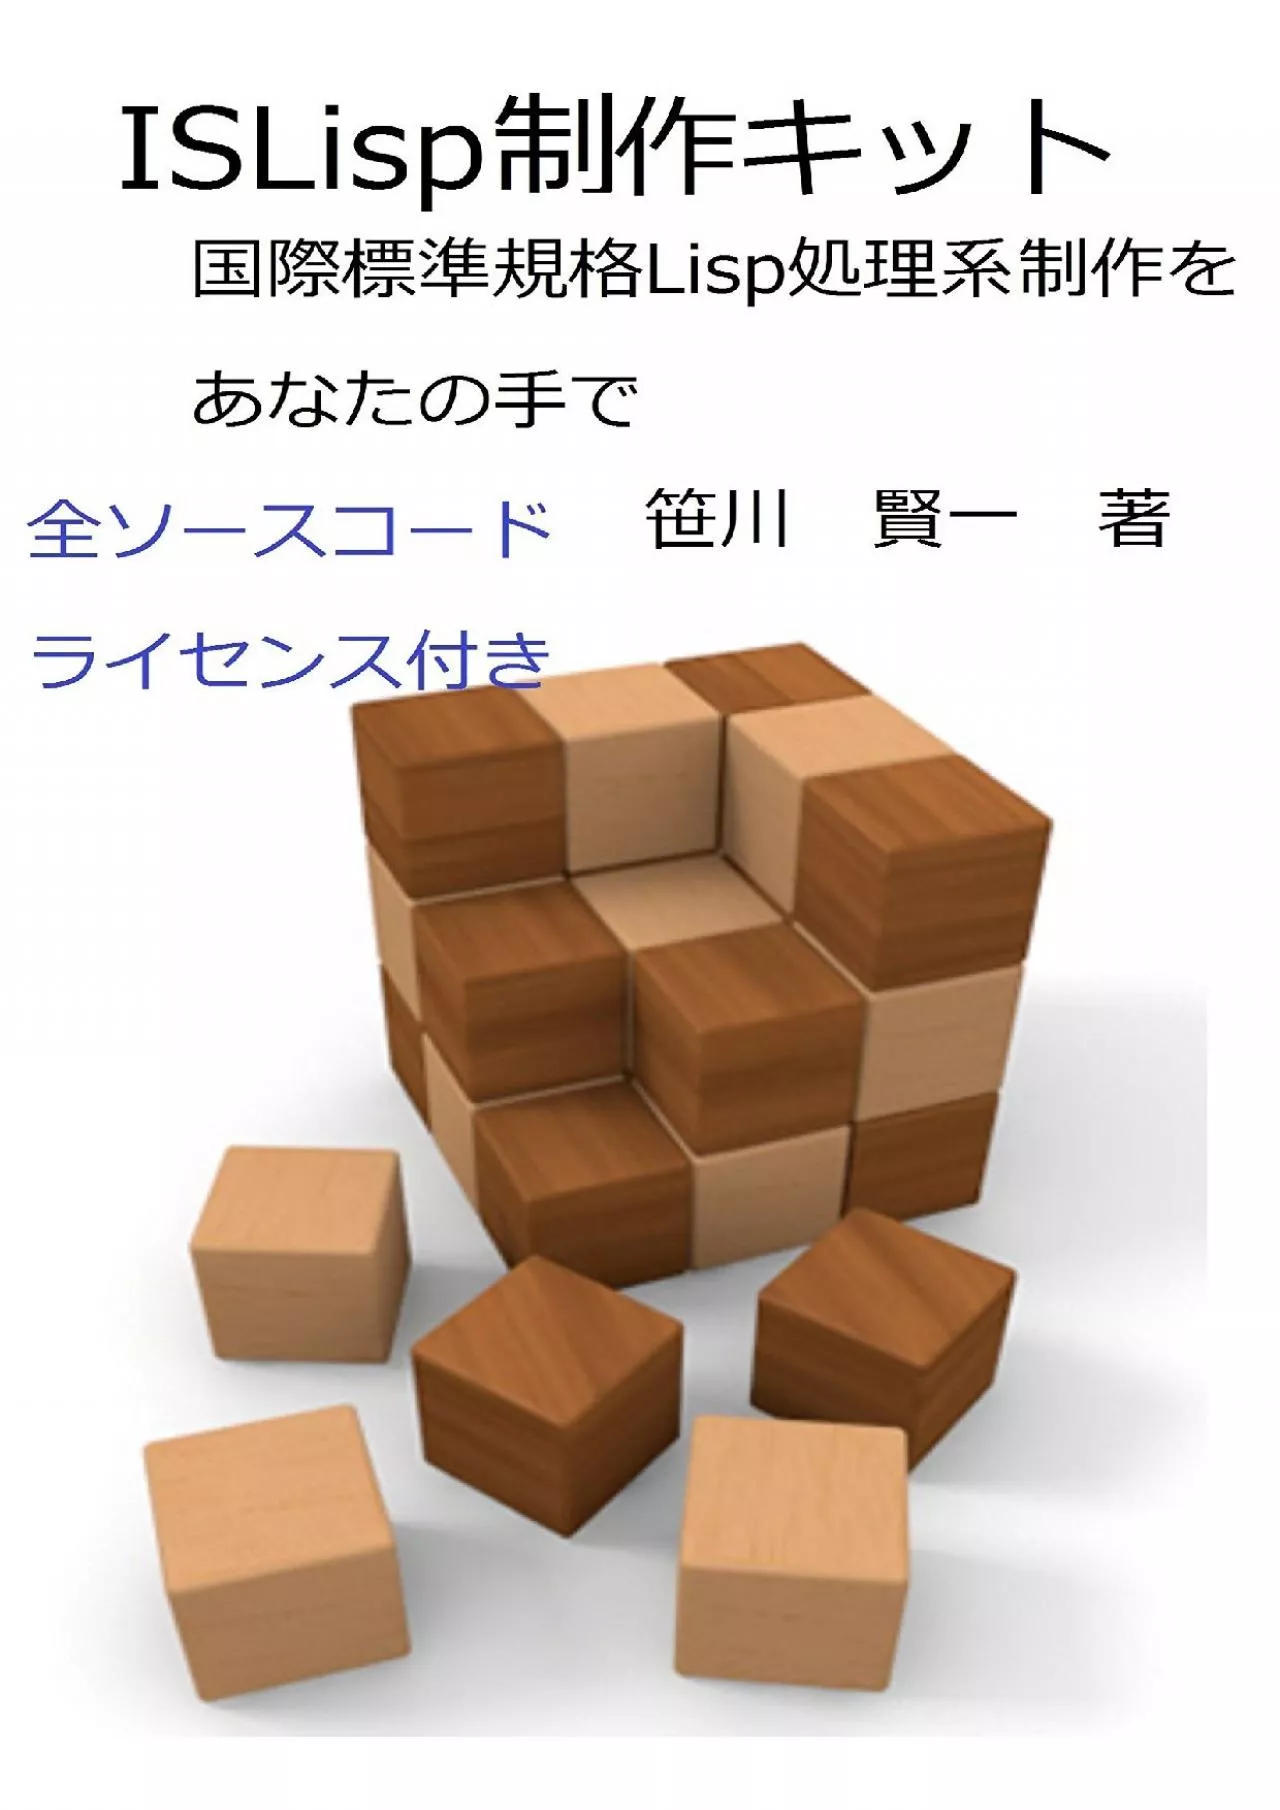 [PDF]-ISLisp seisaku kit (Japanese Edition)